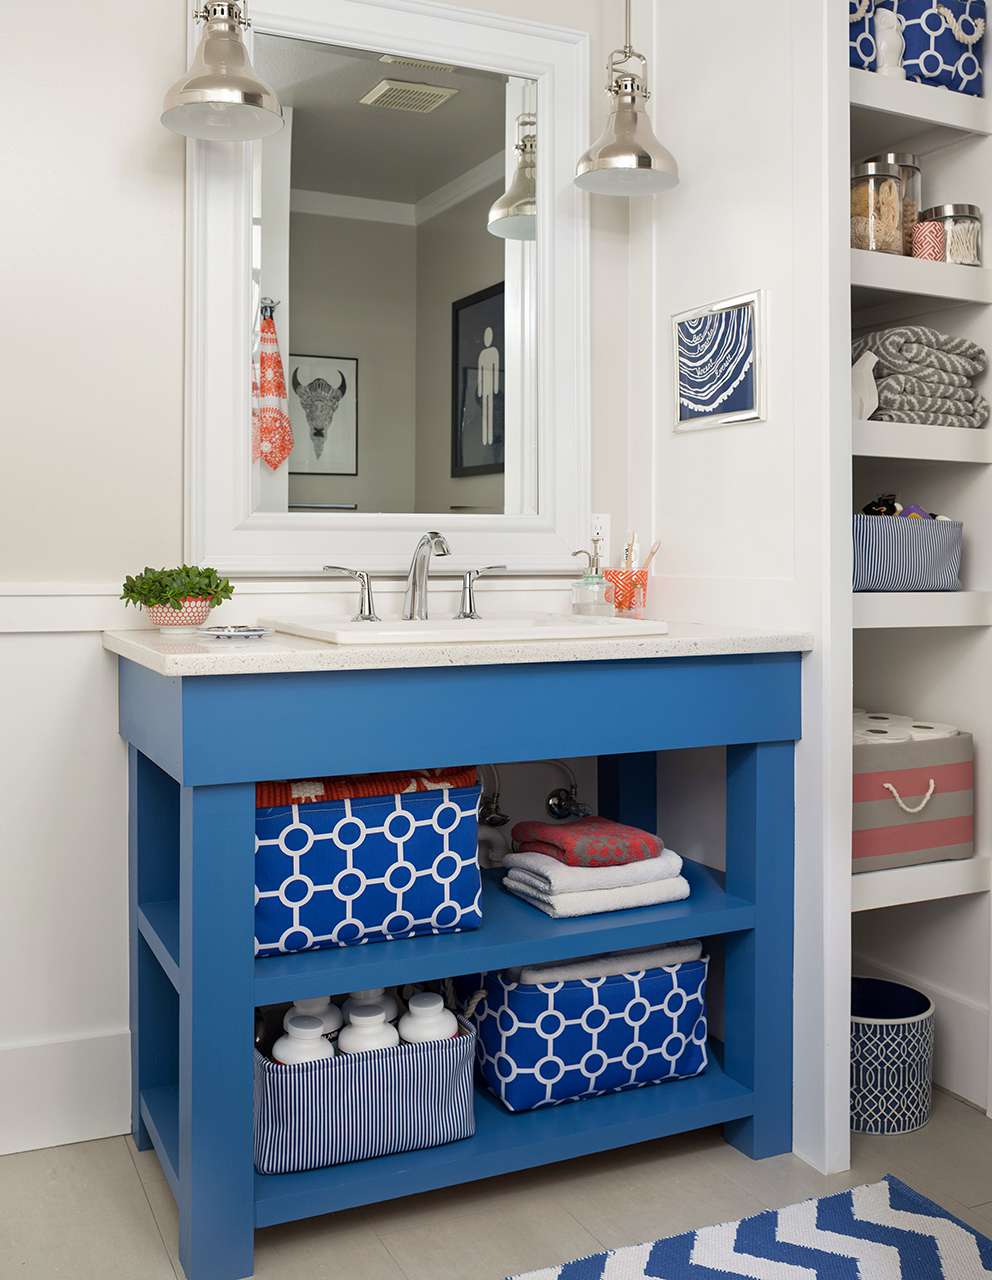 18 Diy Bathroom Vanity Ideas For Custom, How To Make Your Own Vanity Top